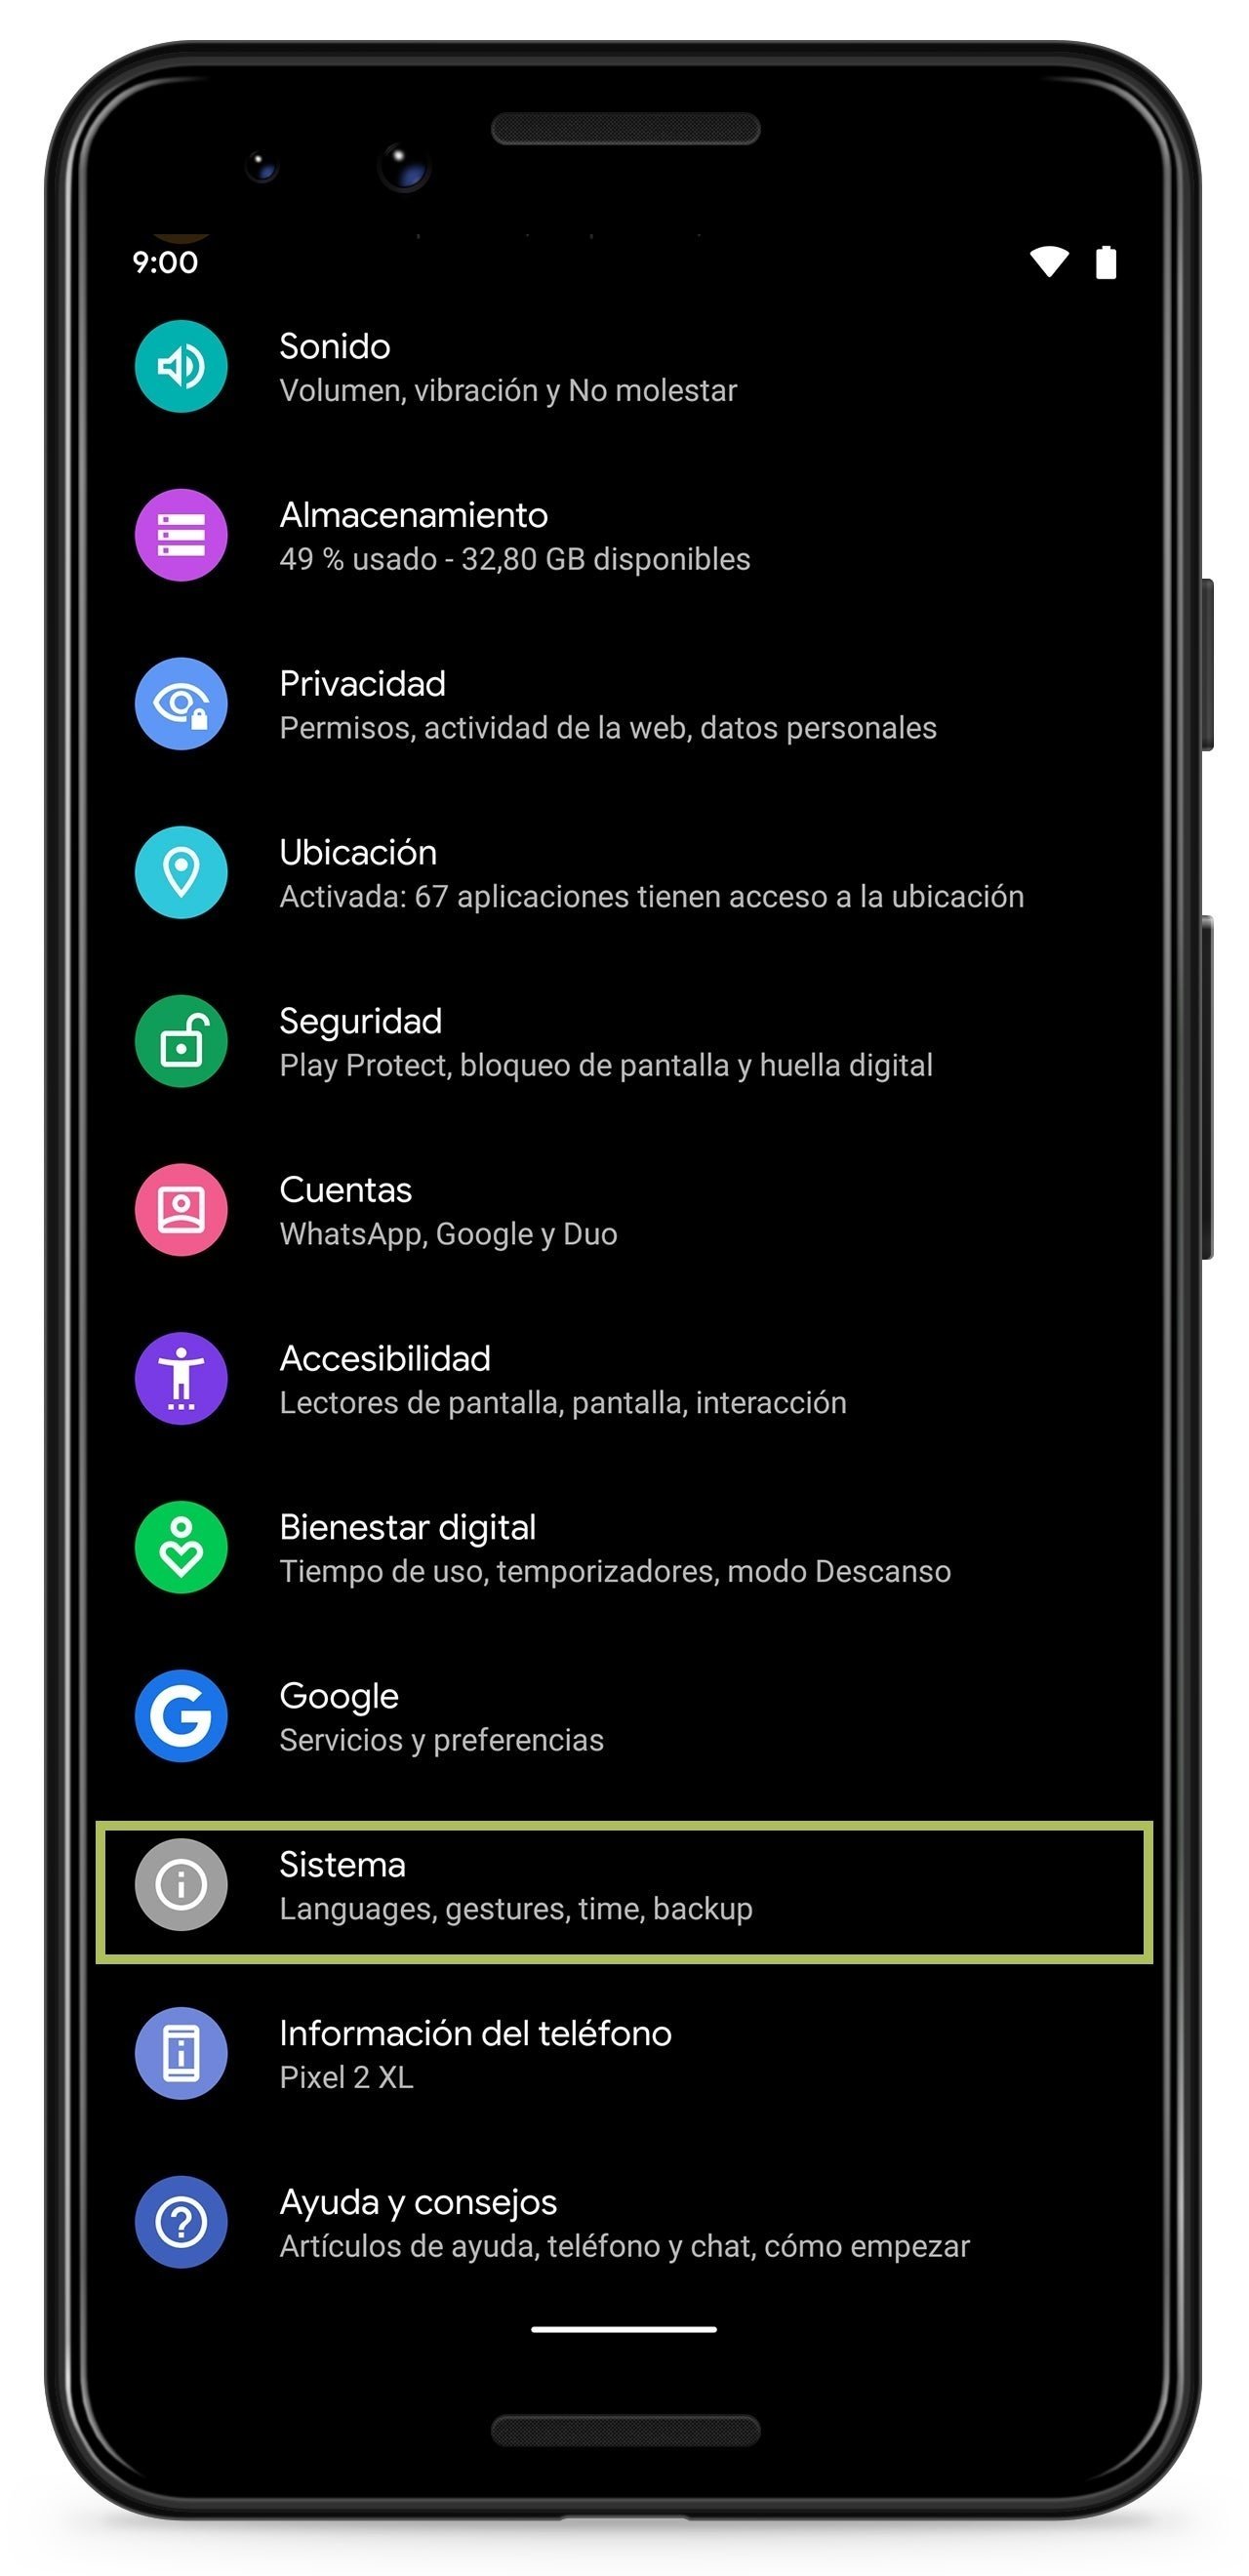 Gestos en Android 10 Q, guía completa